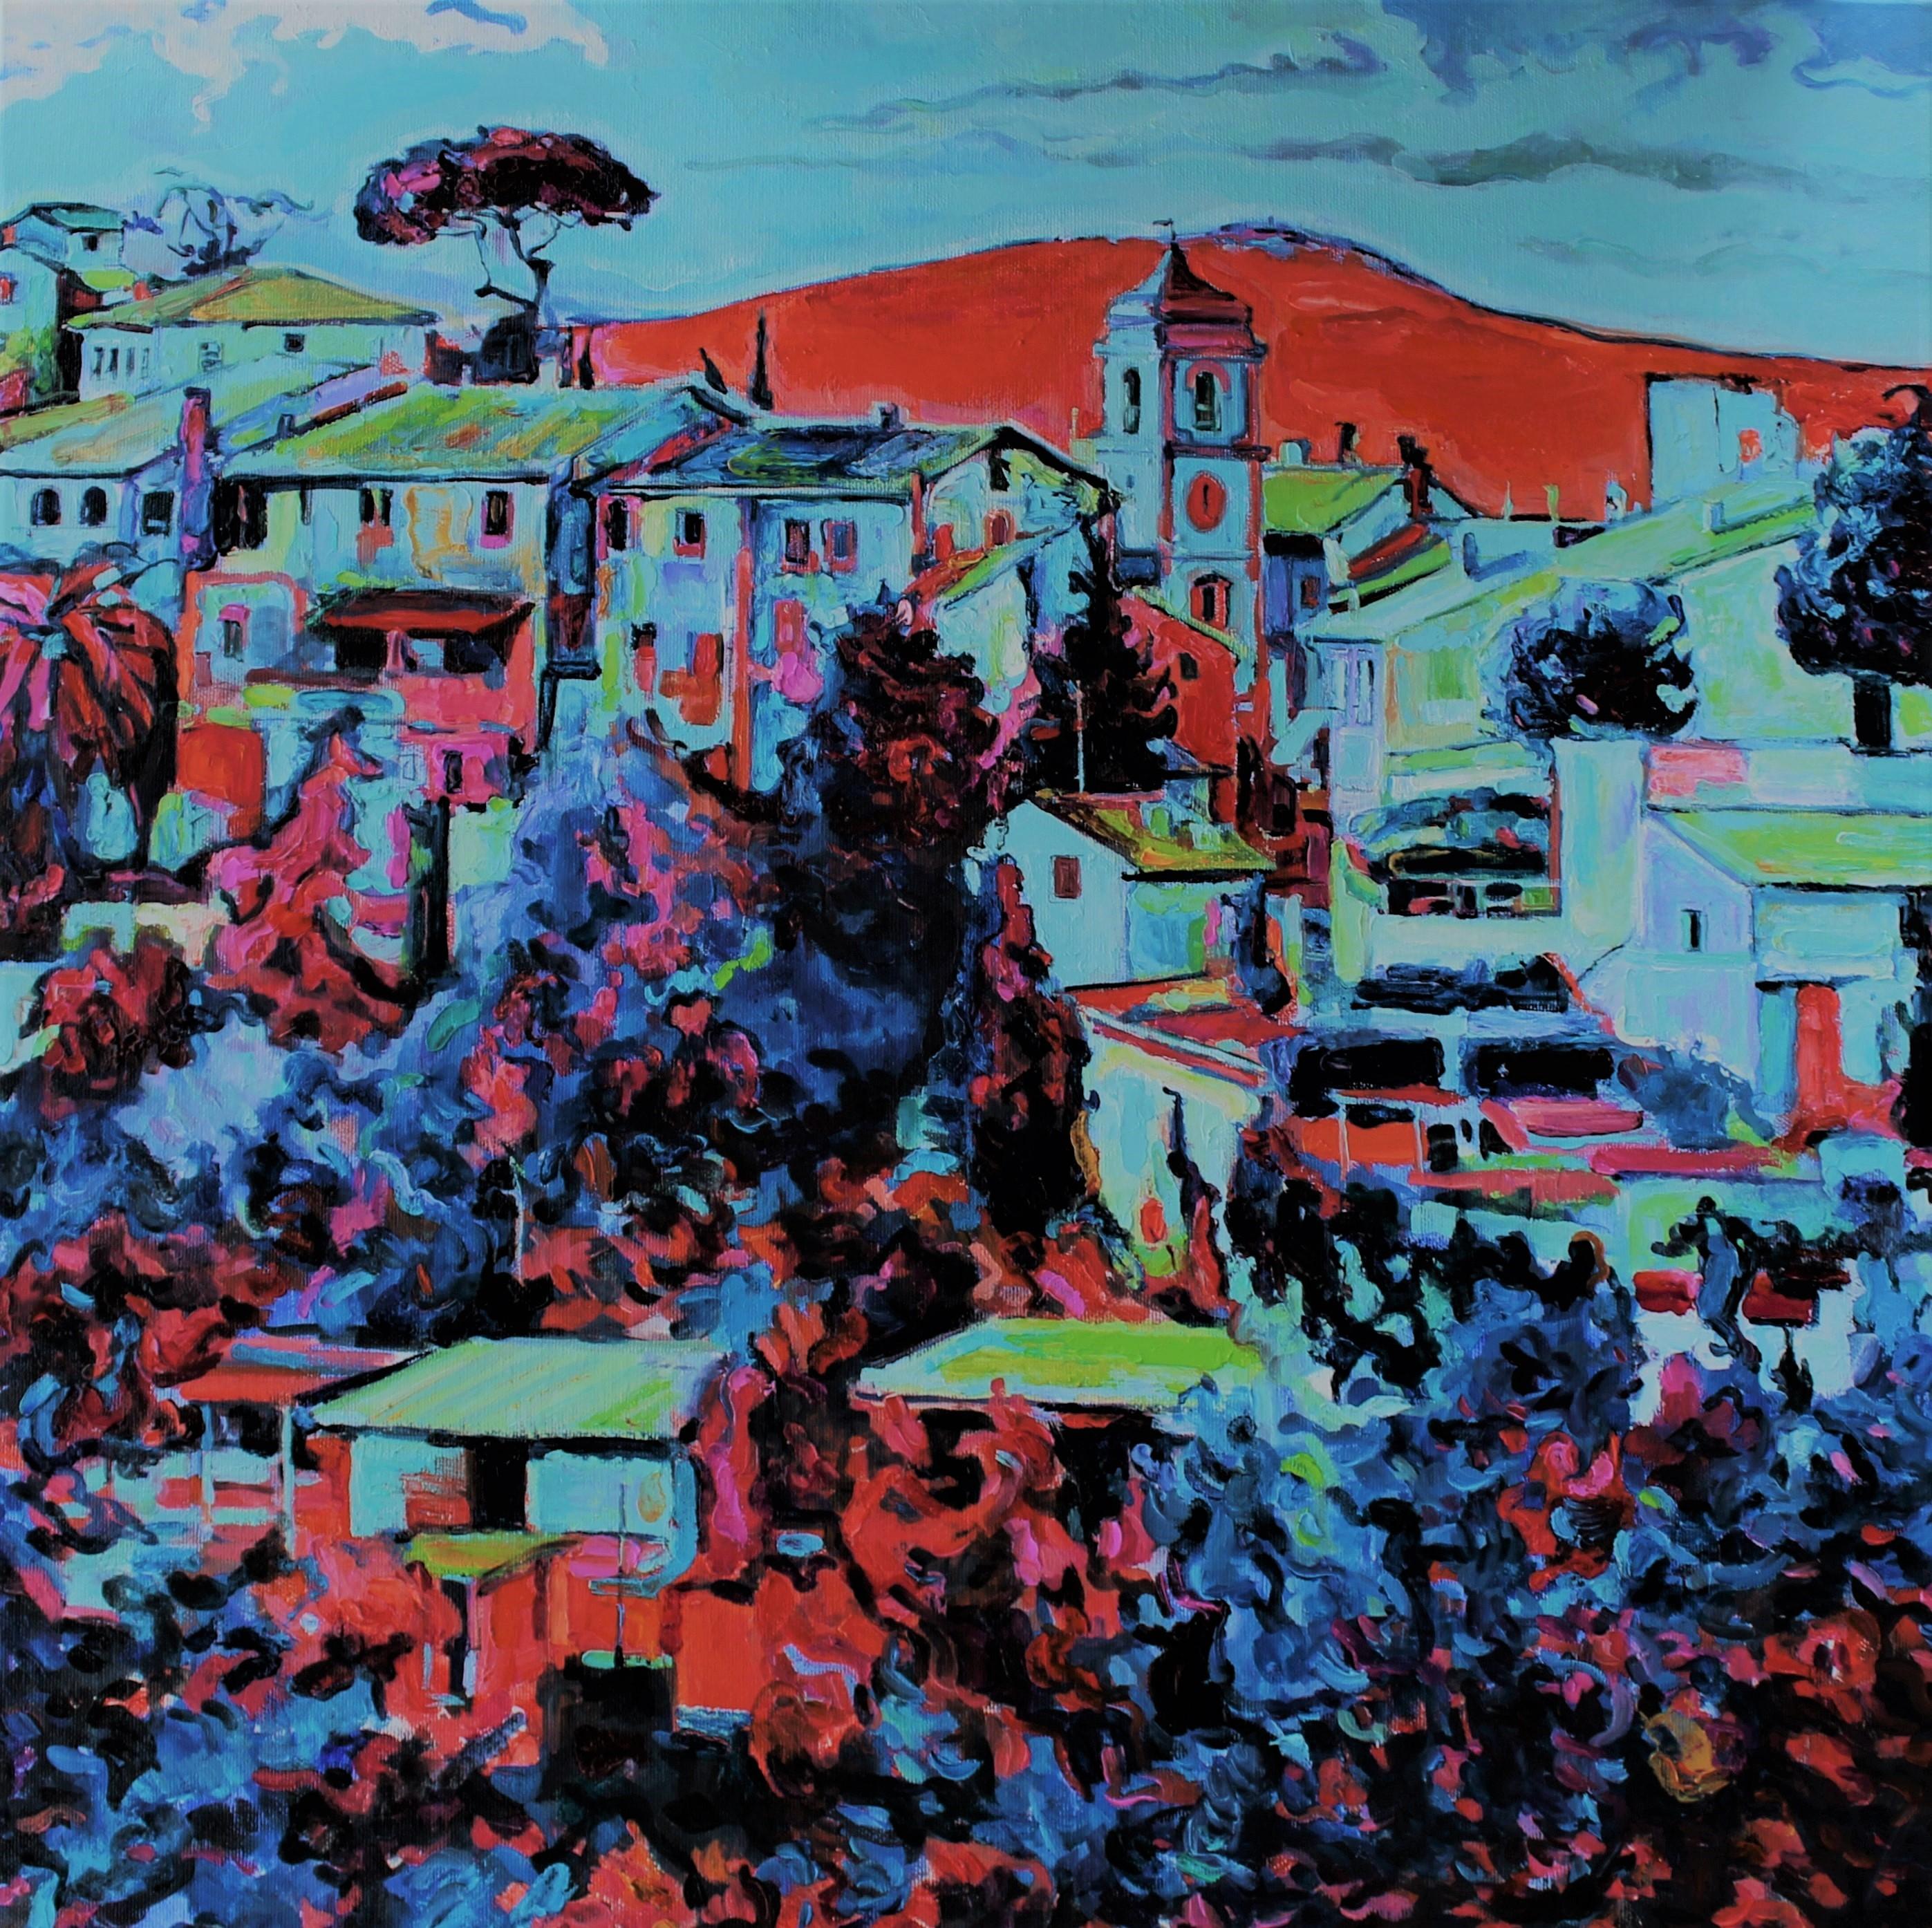 Landscape Painting Elena Georgieva - Italie Bleu - Peinture à l'huile - Paysage rouge, bleu, jaune, blanc et vert 